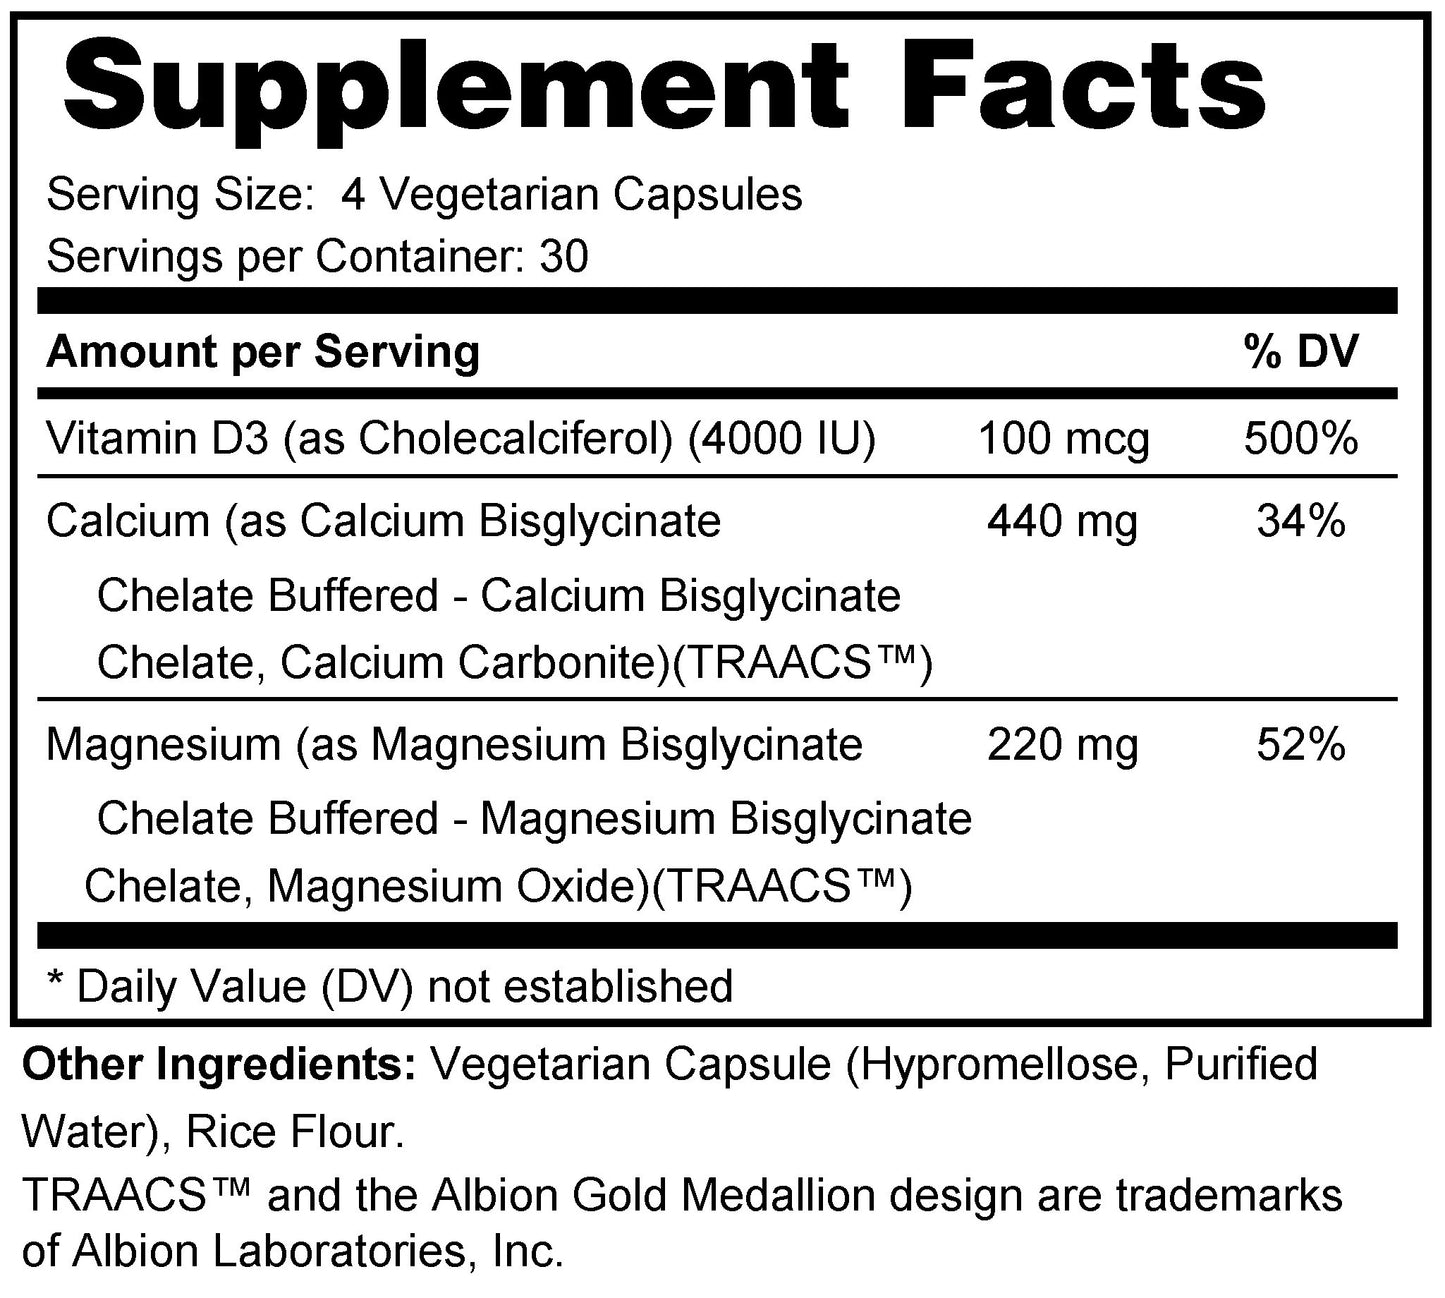 Calcium Magnesium with Vitamin D